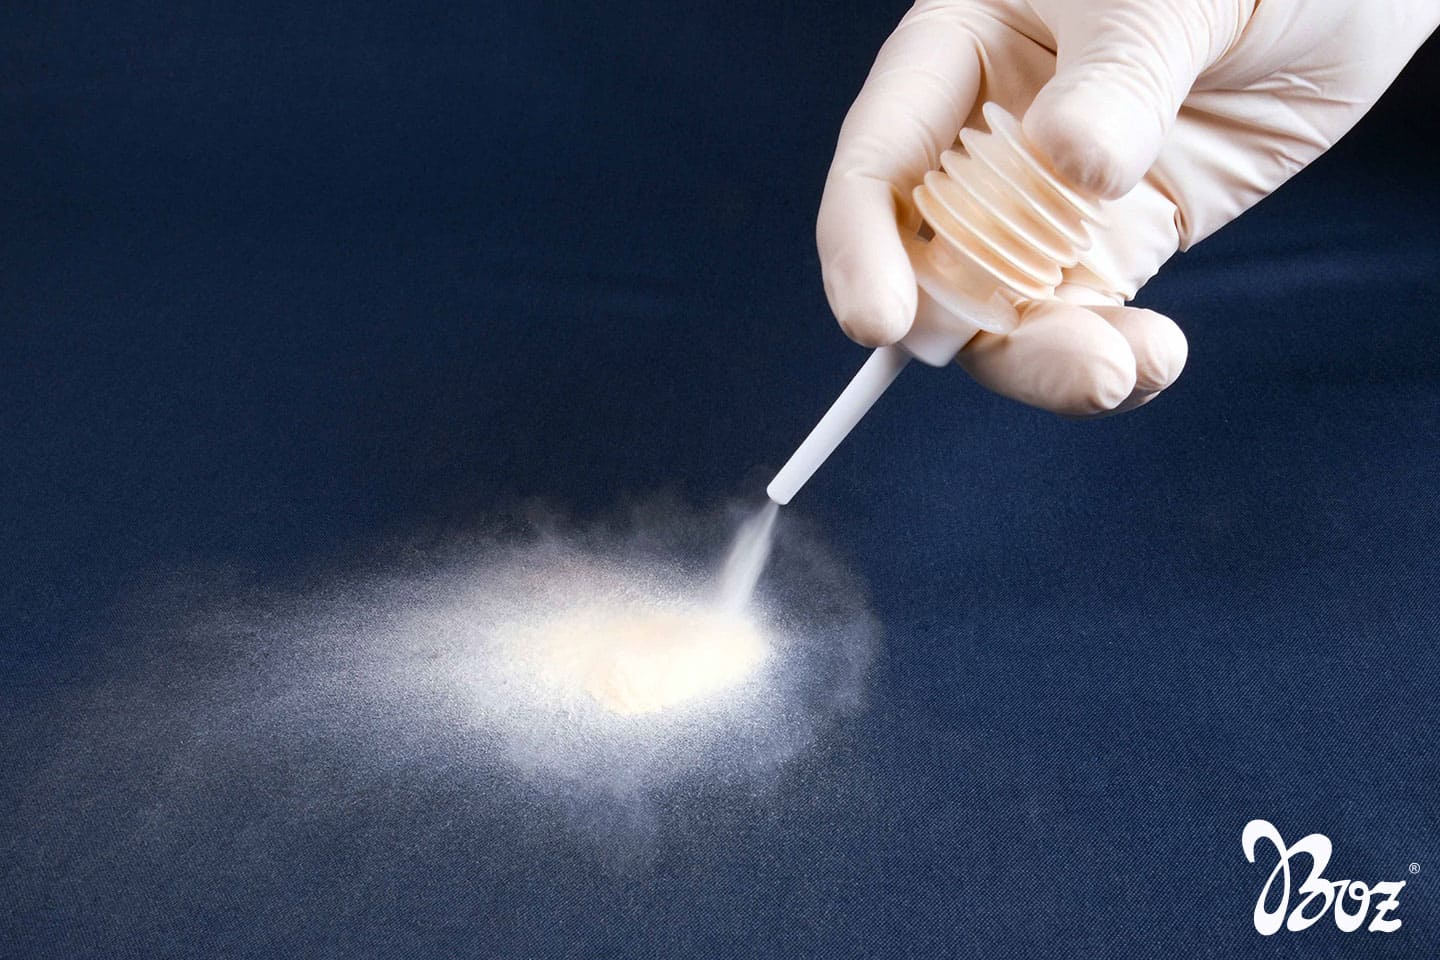 Reoxcel Powder (ORC) Okside Rejenere Selüloz Emilebilir Kanama Durdurucu Toz Hemostatik Ajan